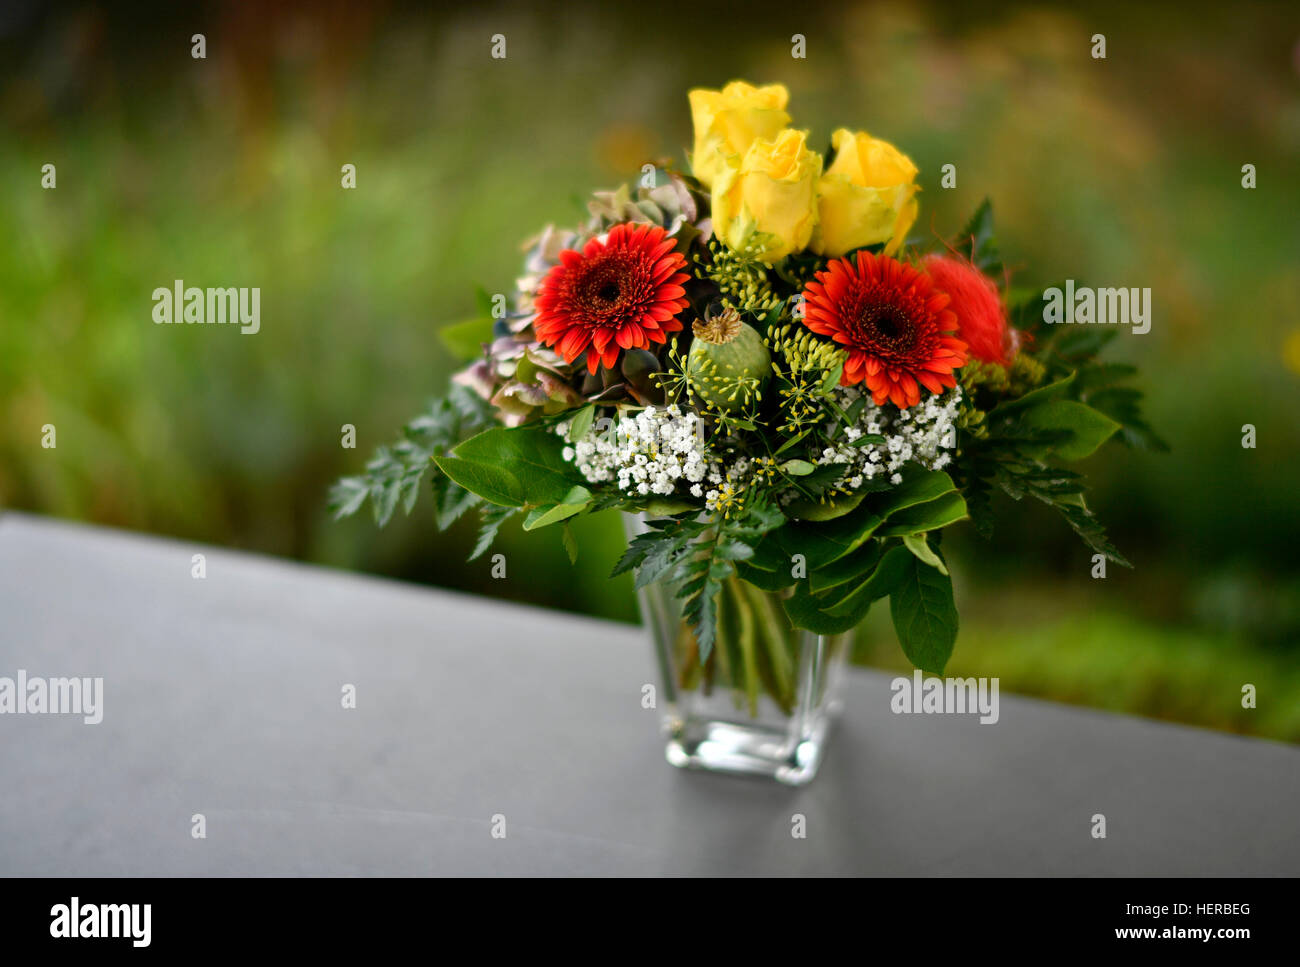 BlumenstrauÃŸ mit gelben Rosen (Rosa sp.) und roten Gerbera (Gerbera L.) steht in einer Blumenvase auf einem Tisch Stock Photo